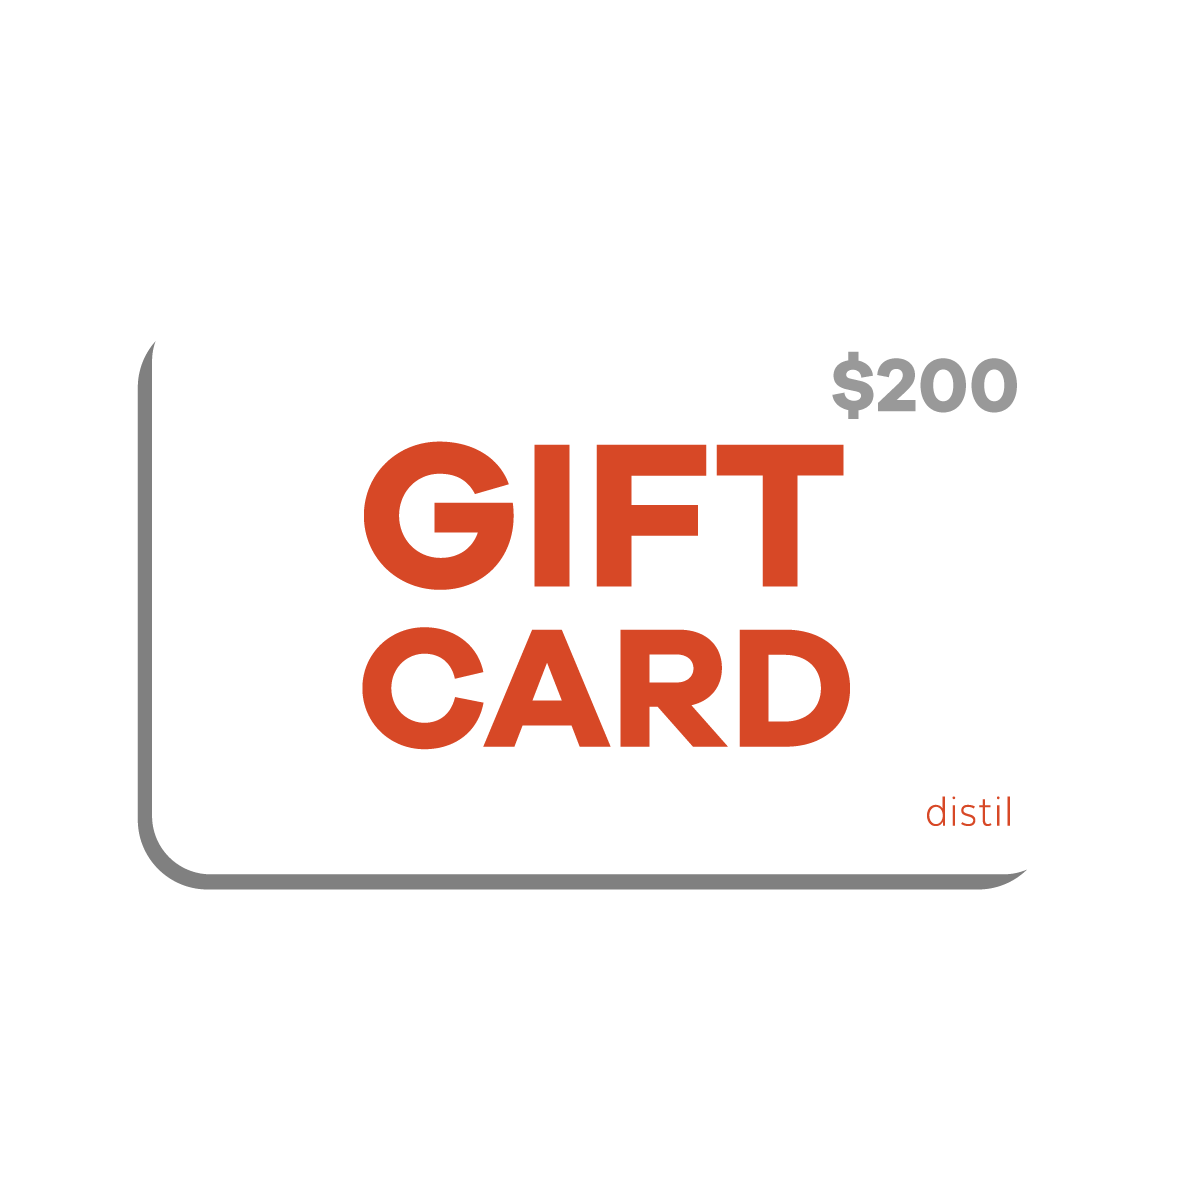 A digital Distil Union gift card worth $200